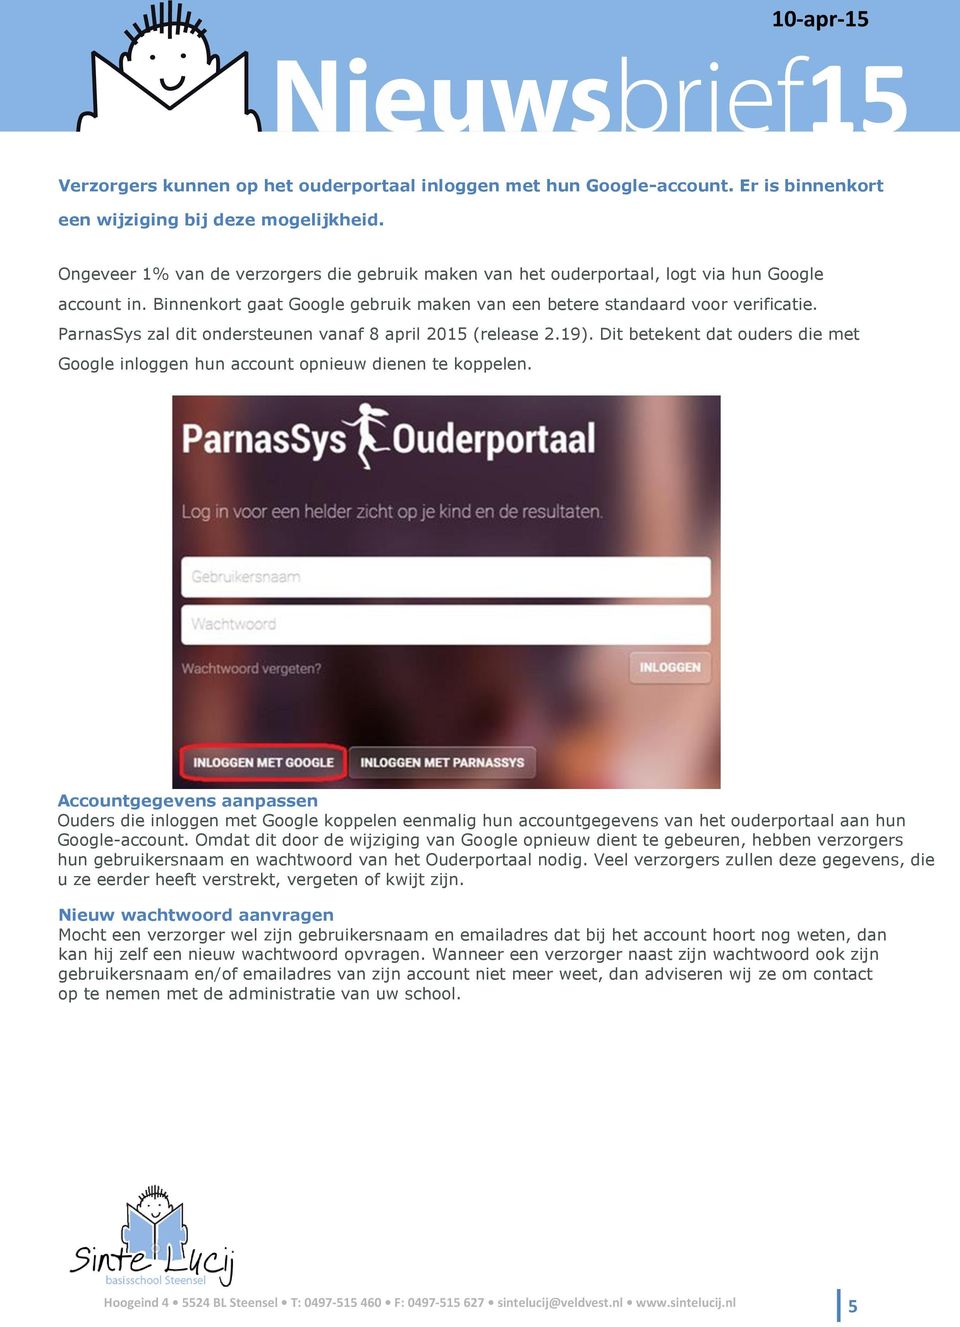 ParnasSys zal dit ondersteunen vanaf 8 april 20 (release 2.19). Dit betekent dat ouders die met Google inloggen hun account opnieuw dienen te koppelen.